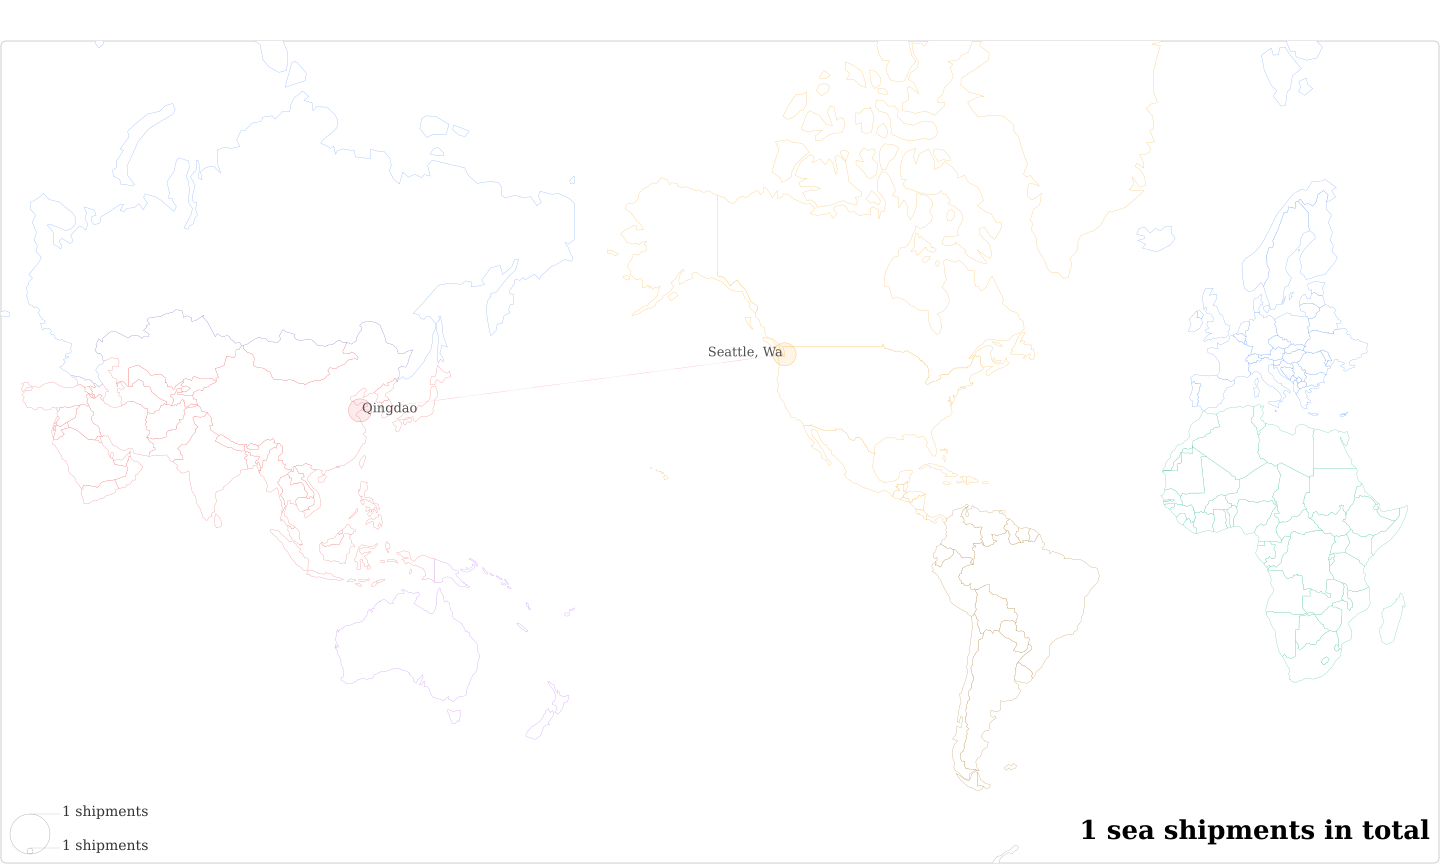 La Bleuetiere Du Soleil's Imports Per Country Map